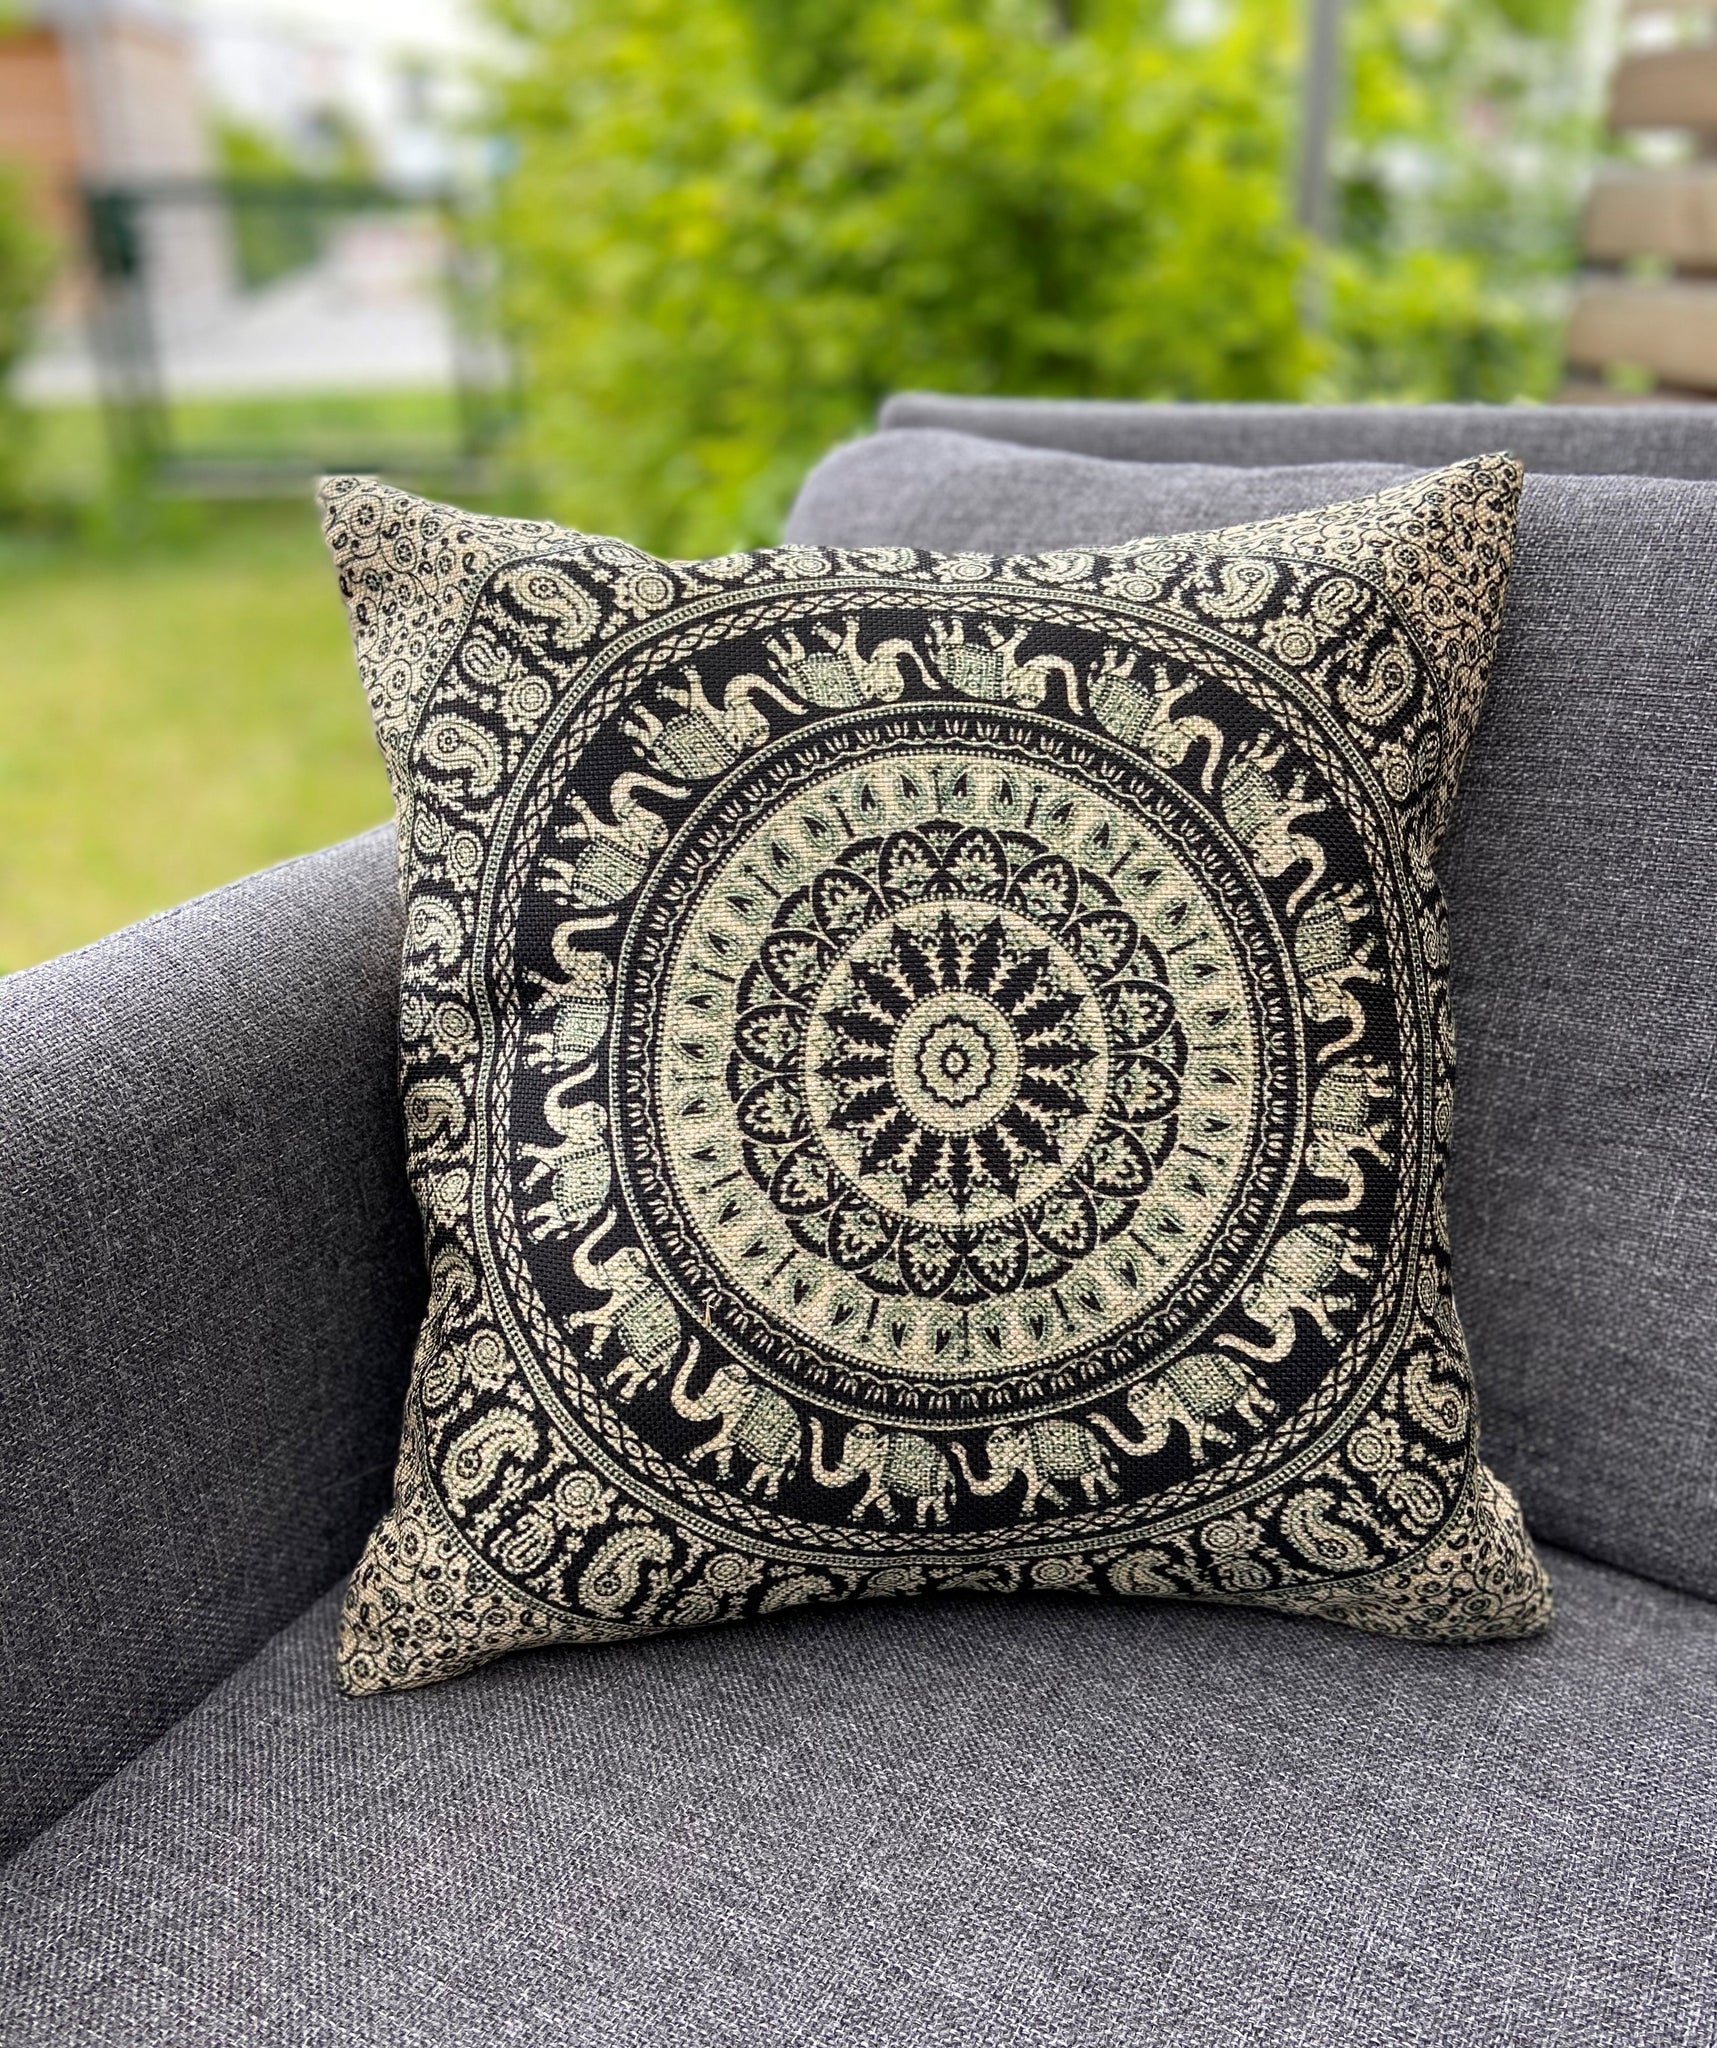 Cushion Cover-Mandala5 in black and white